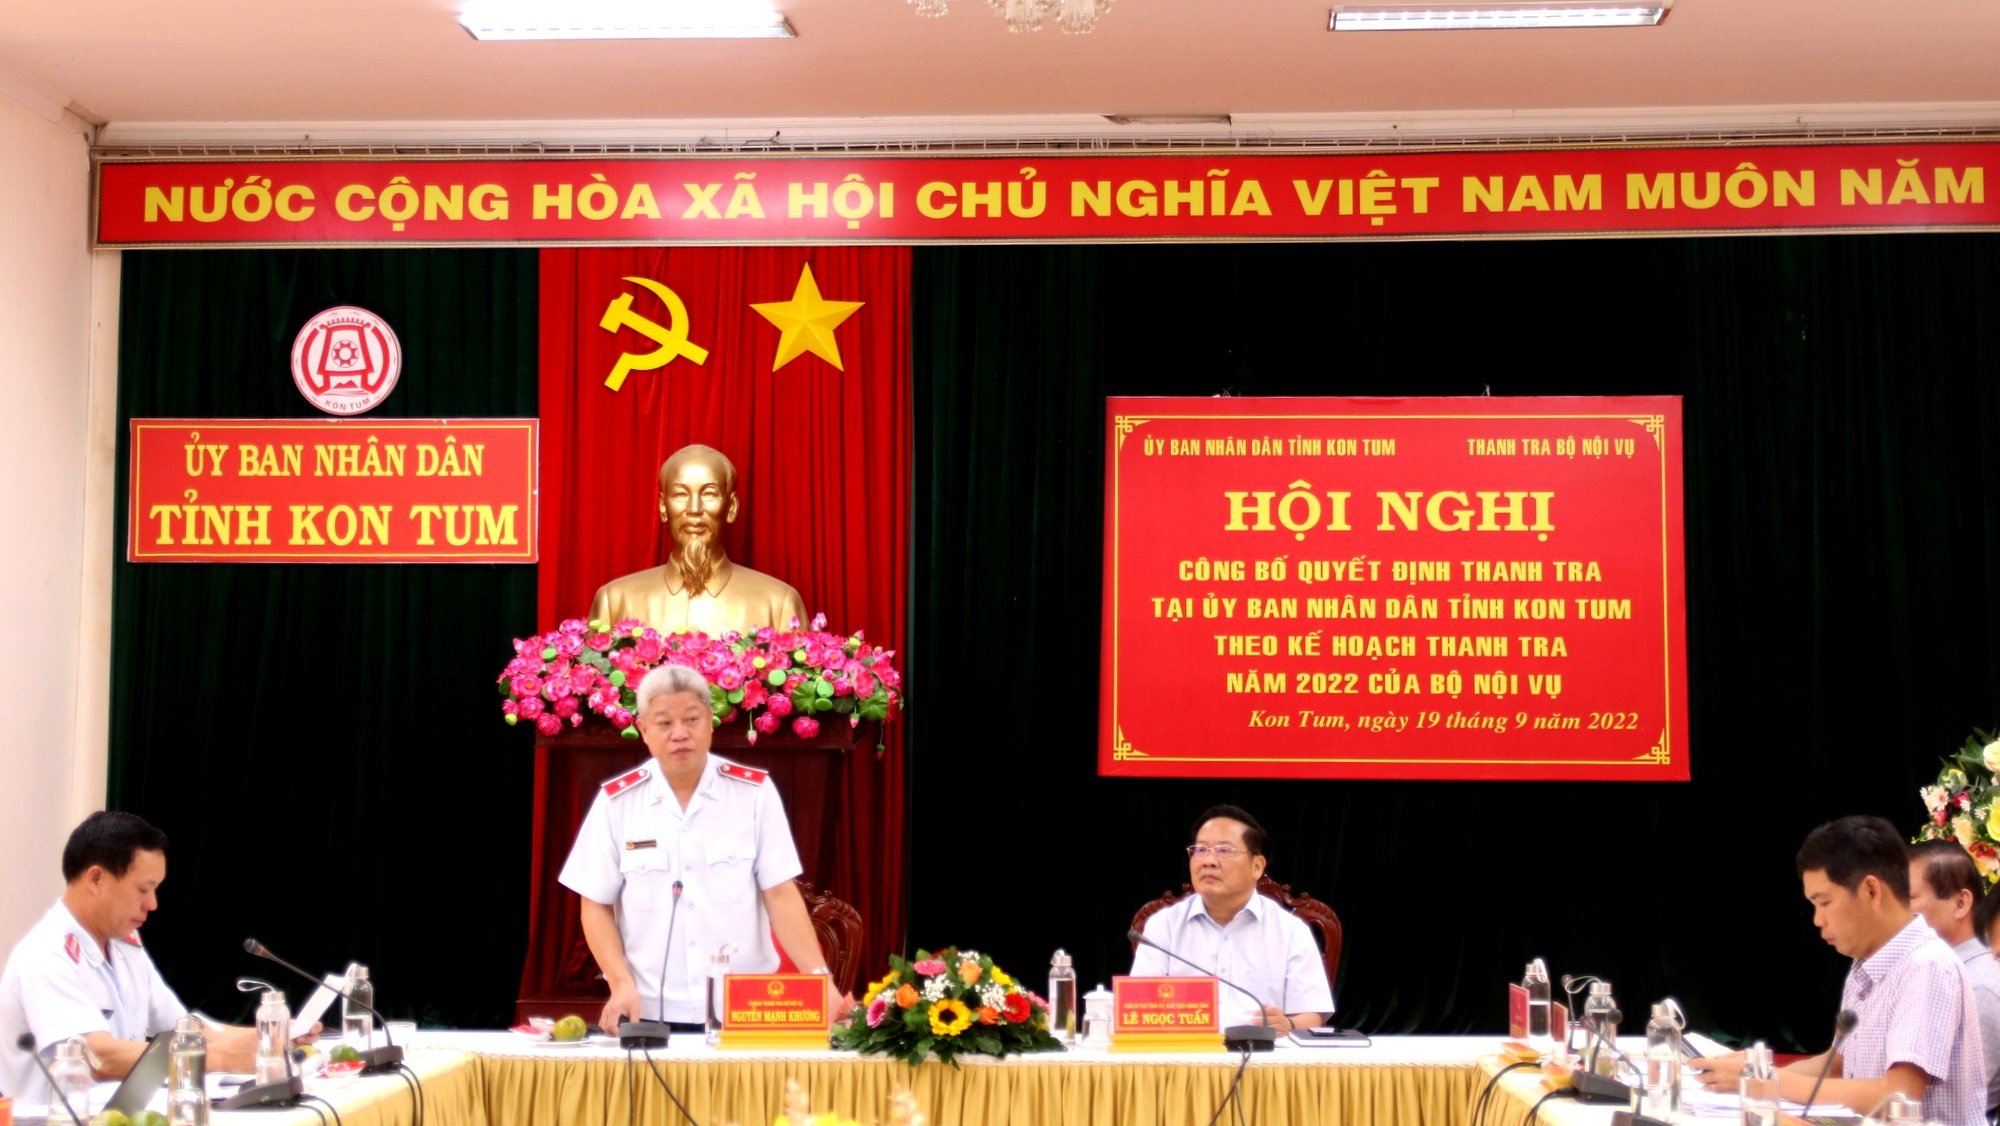 Đồng chí Nguyễn Mạnh Khương, Chánh Thanh tra Bộ Nội vụ công bố quyết định thanh tra.